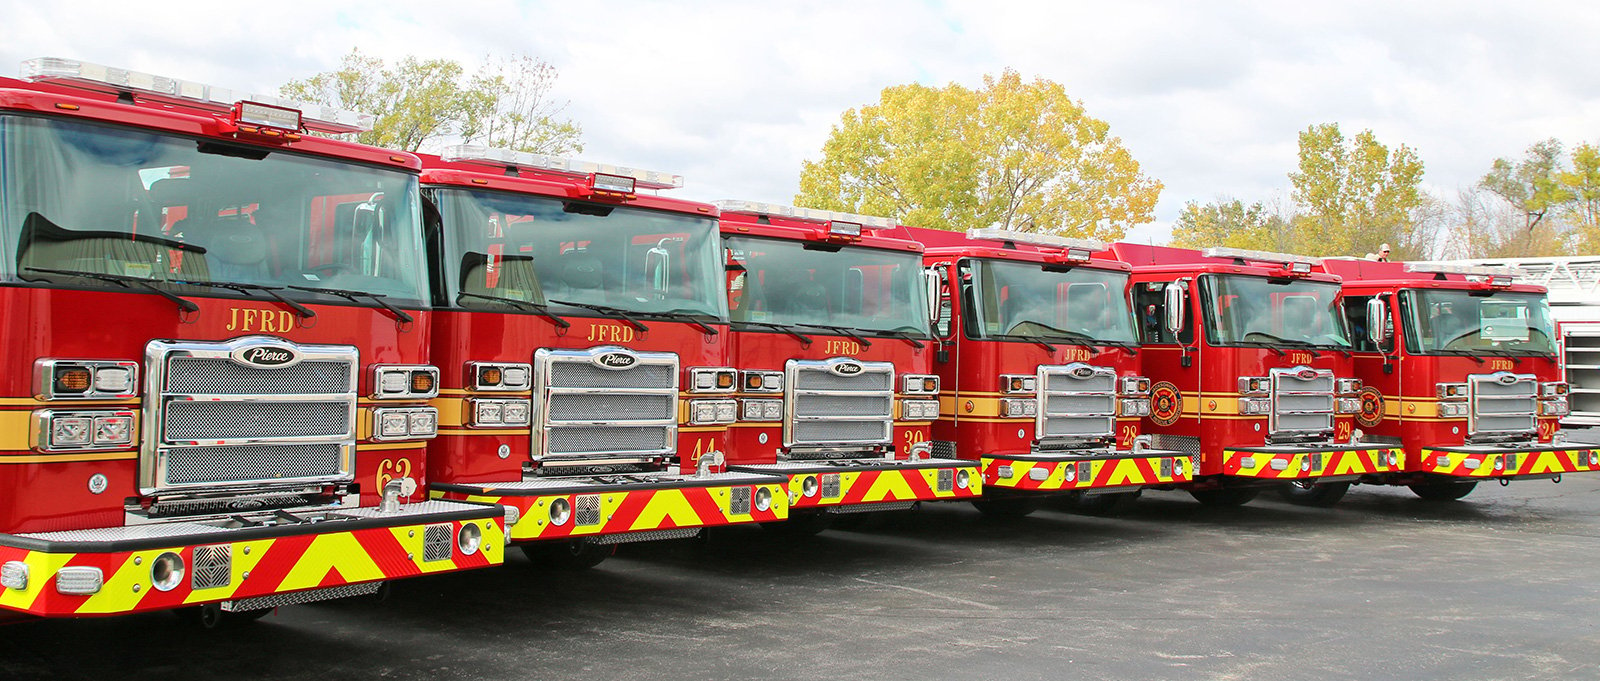 Six Pierce fire trucks lined up showing the JFRD standardized fleet.